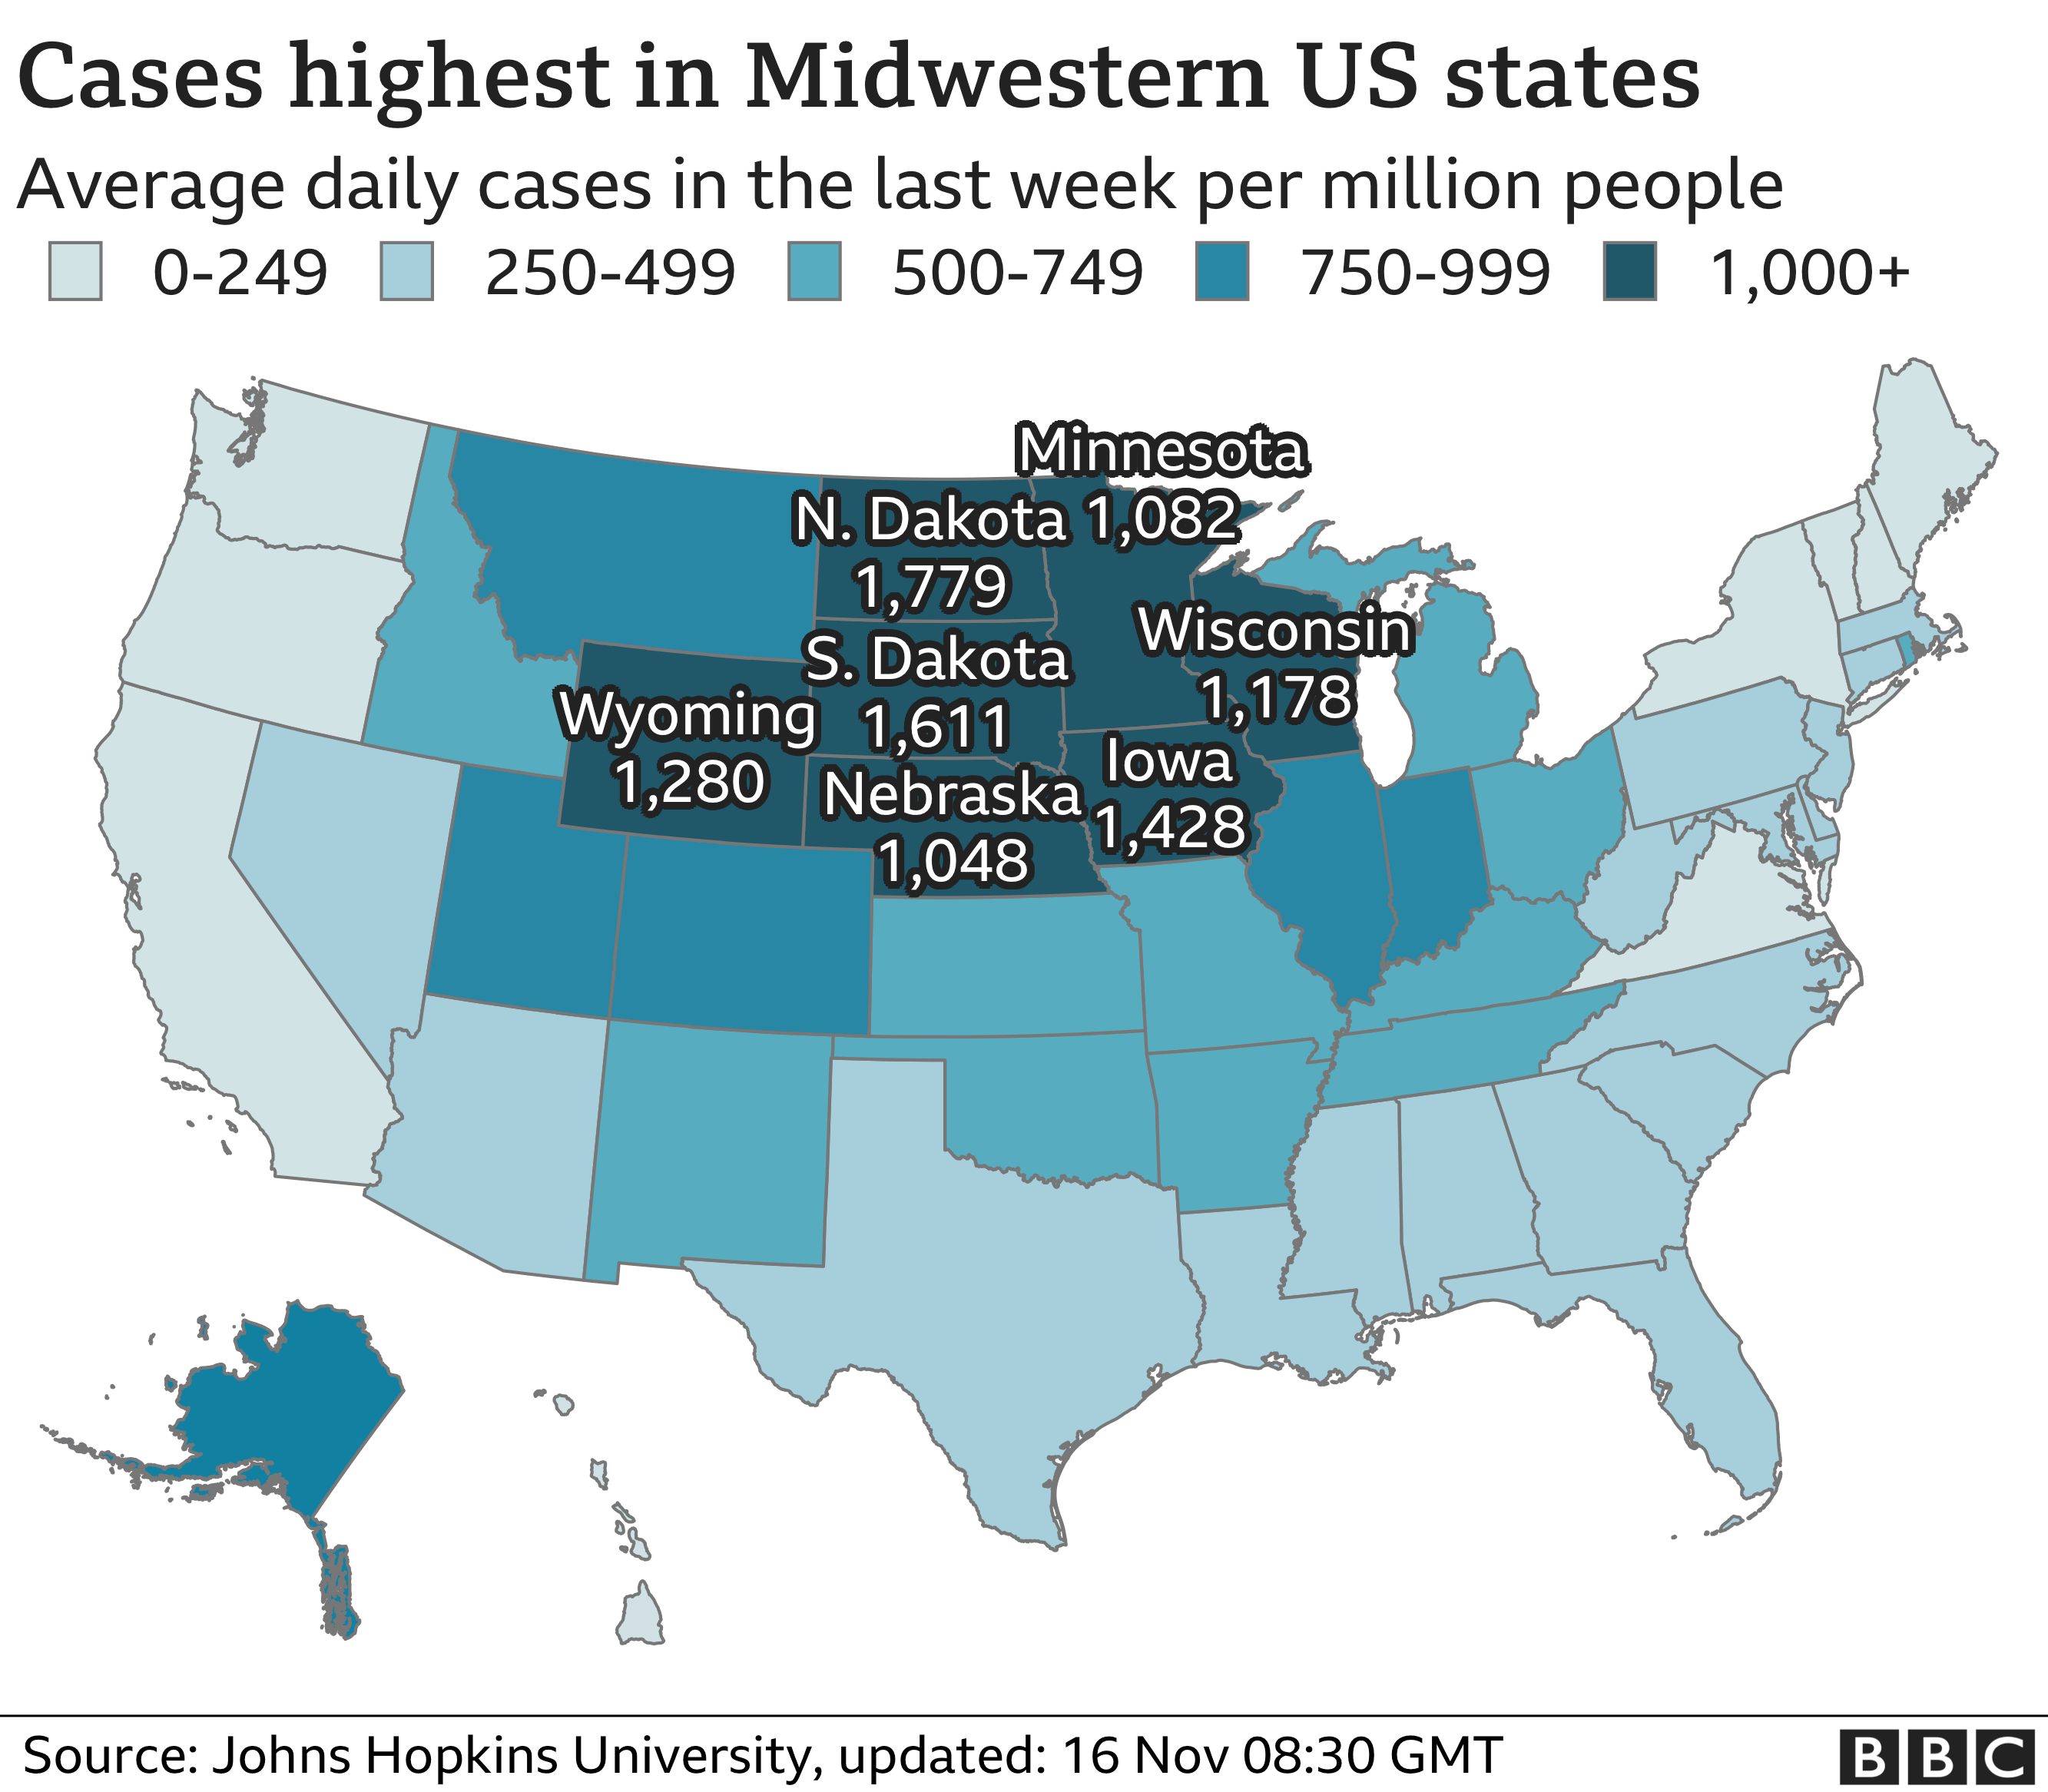 Карта, показывающая количество среднесуточных случаев заболевания за последнюю неделю на миллион человек. Эти цифры наиболее высоки в штатах Среднего Запада, таких как Дакота, Айова и Висконсин.